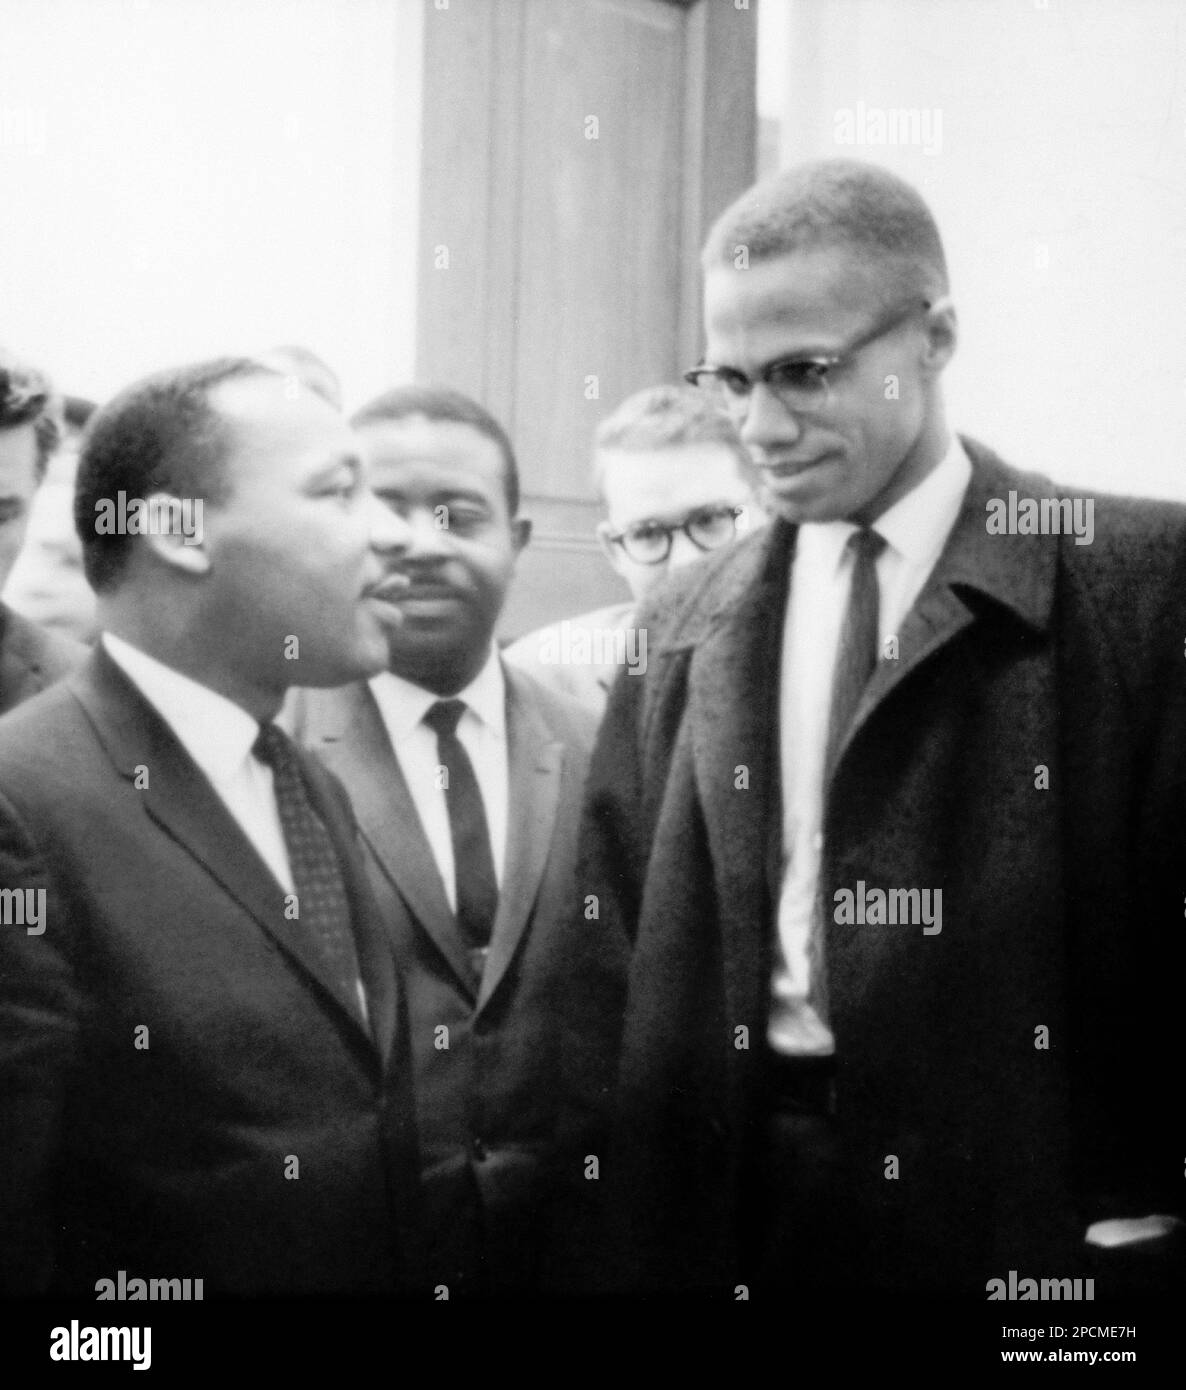 1964 , 26 marzo, USA: Il Rev. Americano Martin Luther King ( 1929 - 1968 ) e MALCOM X ( Malcolm Little 1925 - 1965 ) . Entrambi gli uomini erano venuti per ascoltare il dibattito del Senato sulla Legge sui diritti civili del 1964. Questa era l'unica volta che i due uomini si incontrarono; il loro incontro durò solo un minuto. Foto di Marion S. Trikosko , fotografo degli Stati Uniti News & World Report - Stati Uniti - USA - ritratto - ritratto - cravatta - cravatta - colletto - colletto - lente - occhiali da vista - DIRITTI CIVILI ---- NON PER USO PUBBLICITARIO --- NON PER uso PUBBLICITARIO -- - NON PER L'USO DI GADGET ---- ARCHIVIO GBB Foto Stock